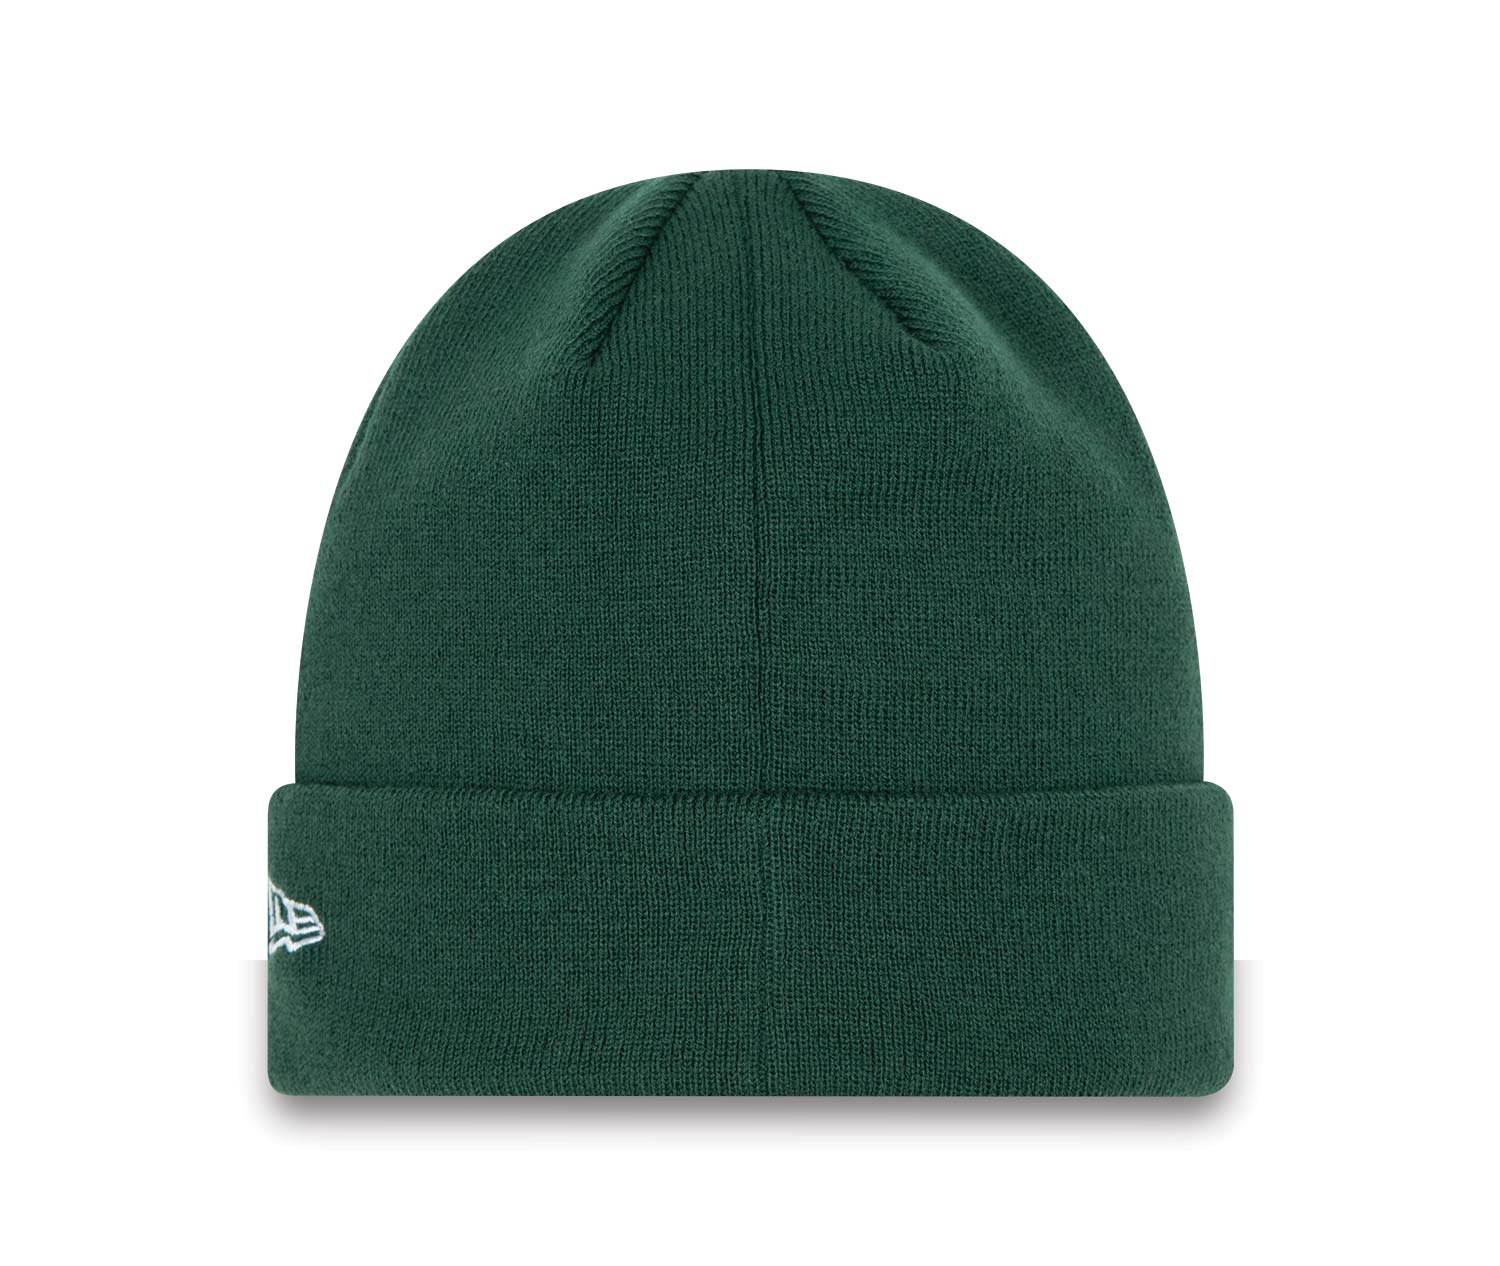 New York Yankees League Essentials Dark Green Cuff Beanie Hat